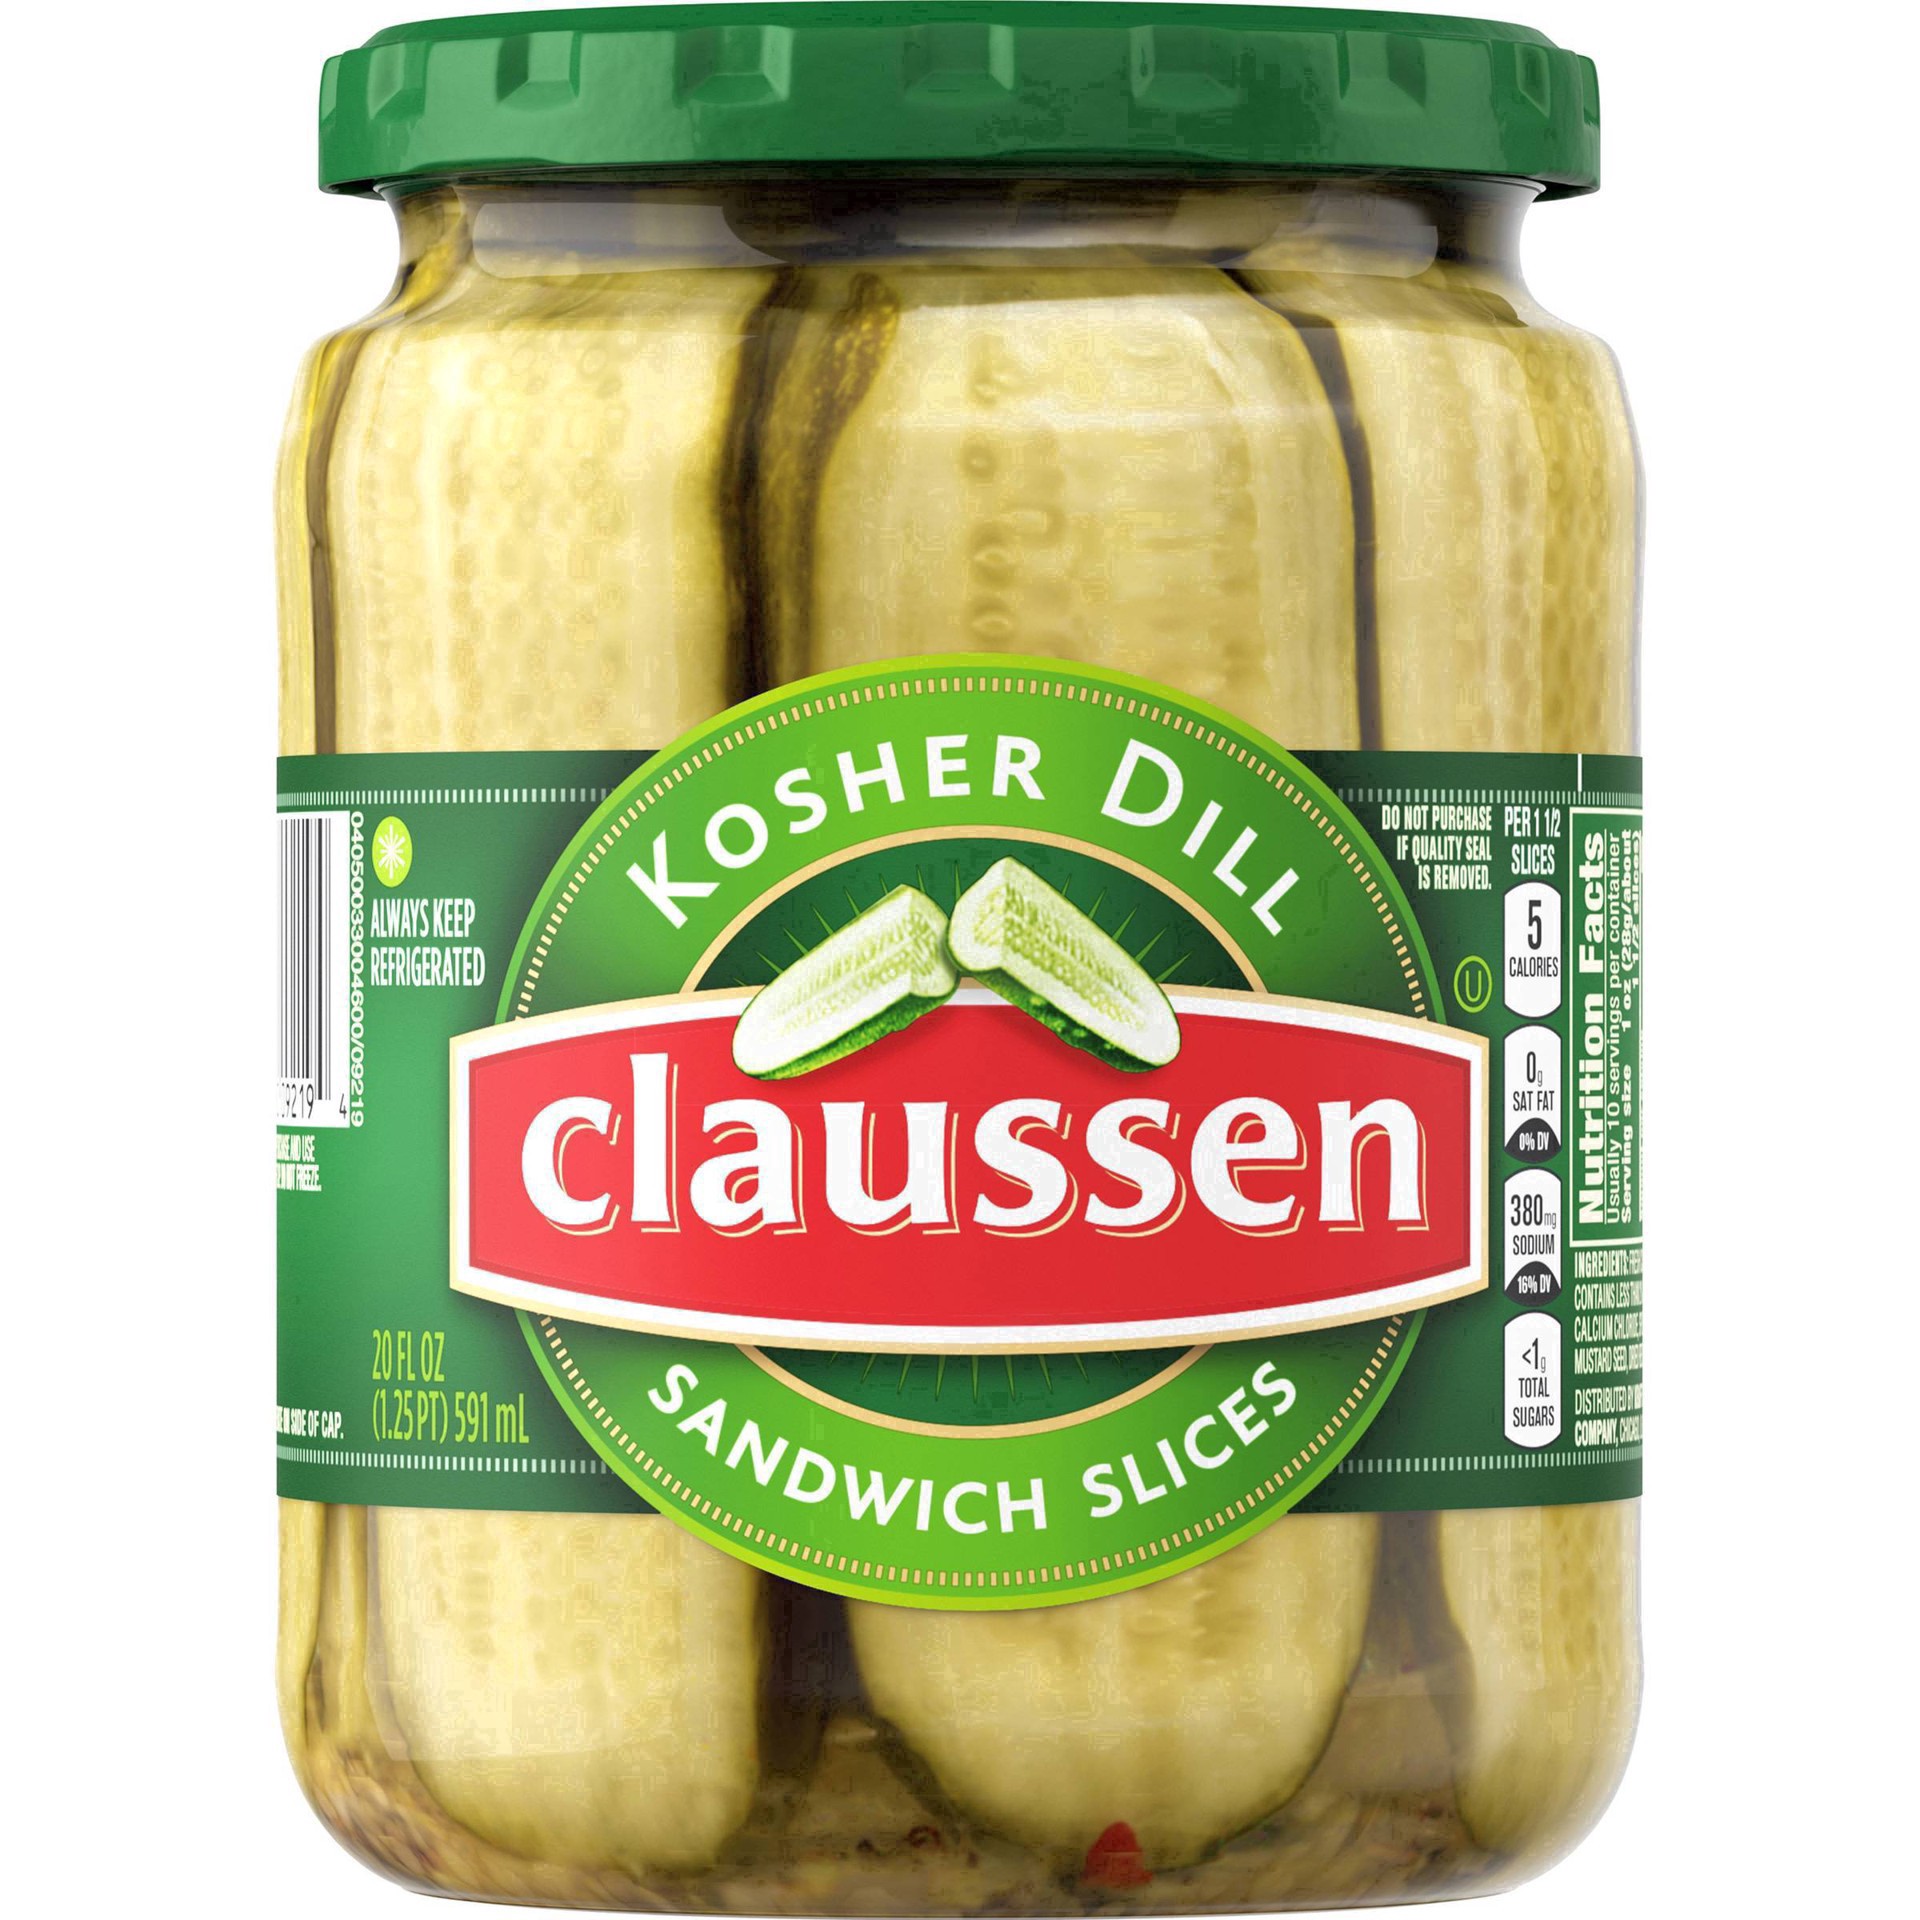 slide 122 of 144, Claussen Kosher Dill Pickle Sandwich Slices, 20 fl. oz. Jar, 20 fl oz